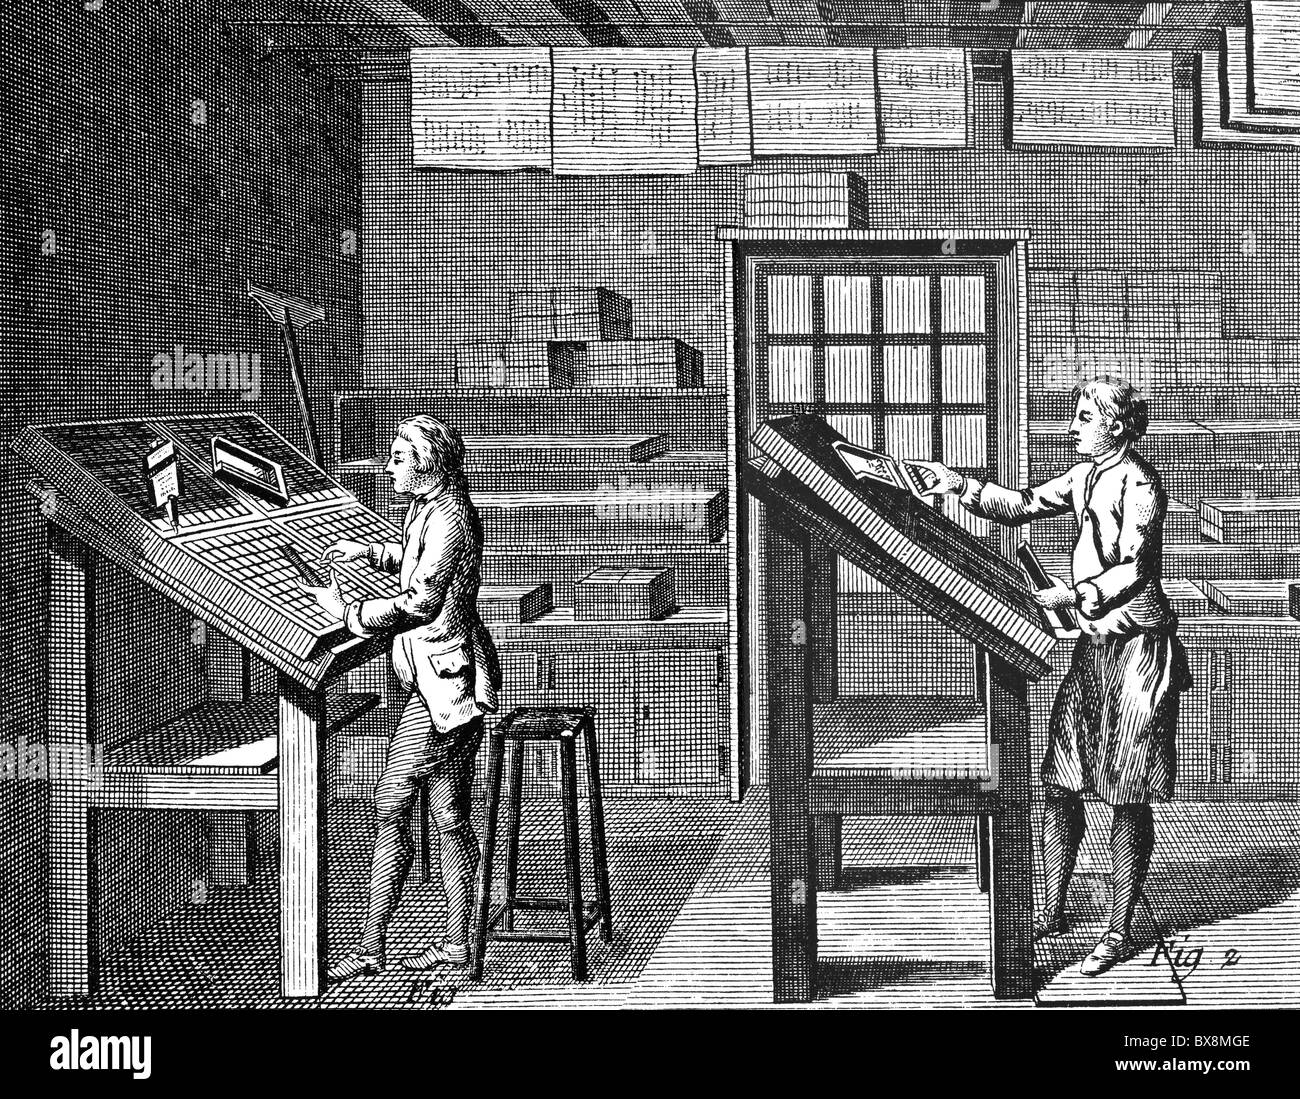 Personnes, professions, typographe, gravure sur cuivre, "Encyclopedie" de Denis Diderot et Jean d'Alembert, 1751 - 1780, , n'a pas d'auteur de l'artiste pour être effacé Banque D'Images